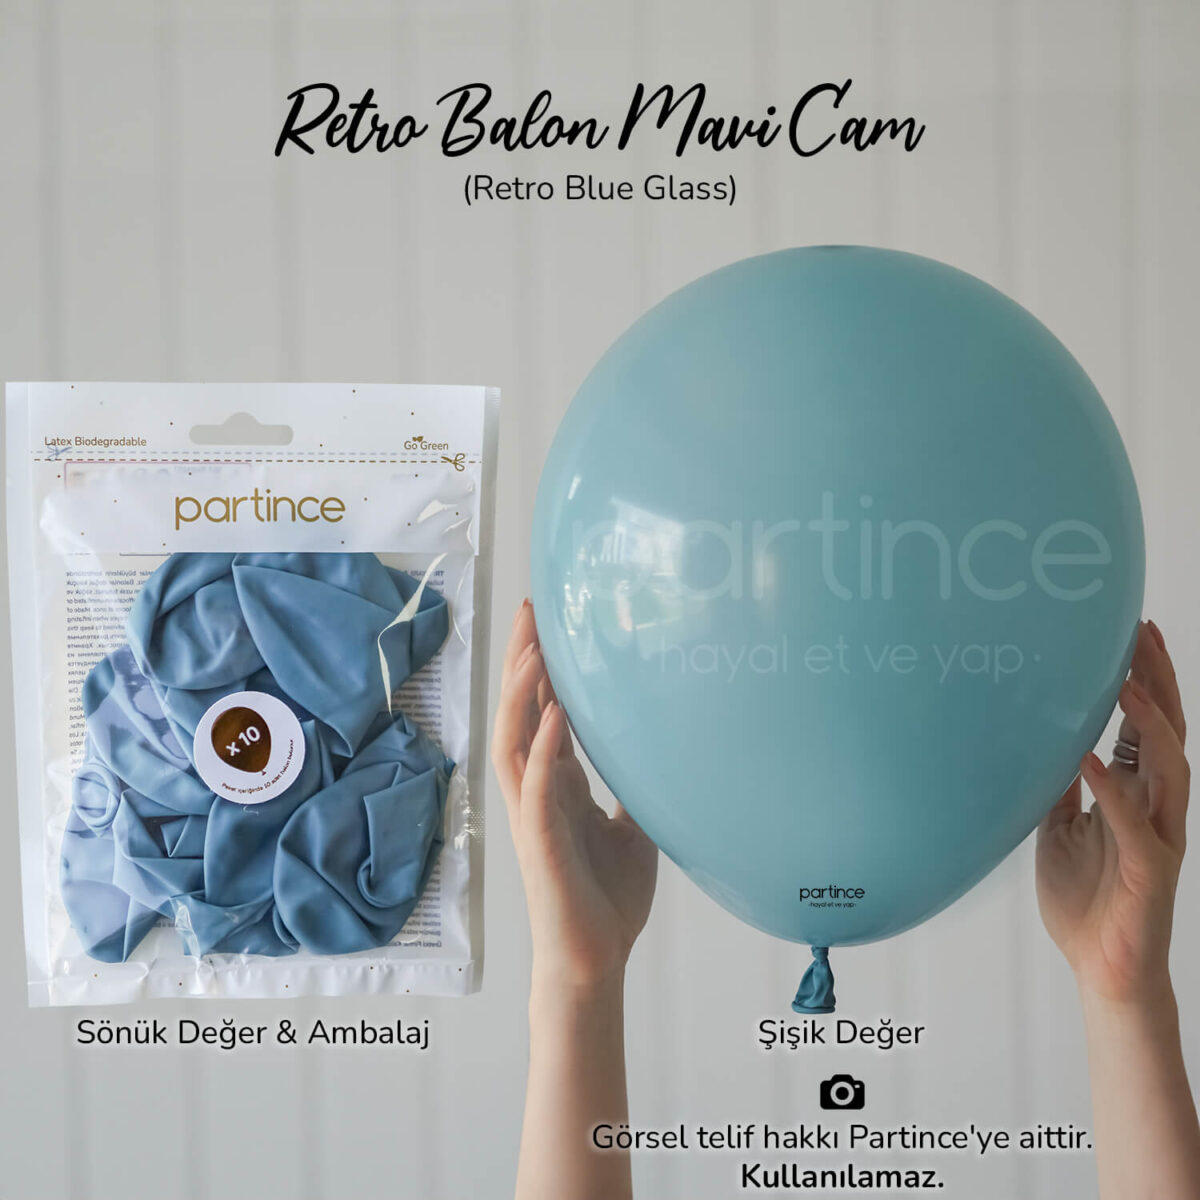 Retro balon blue glass (mavi cam)